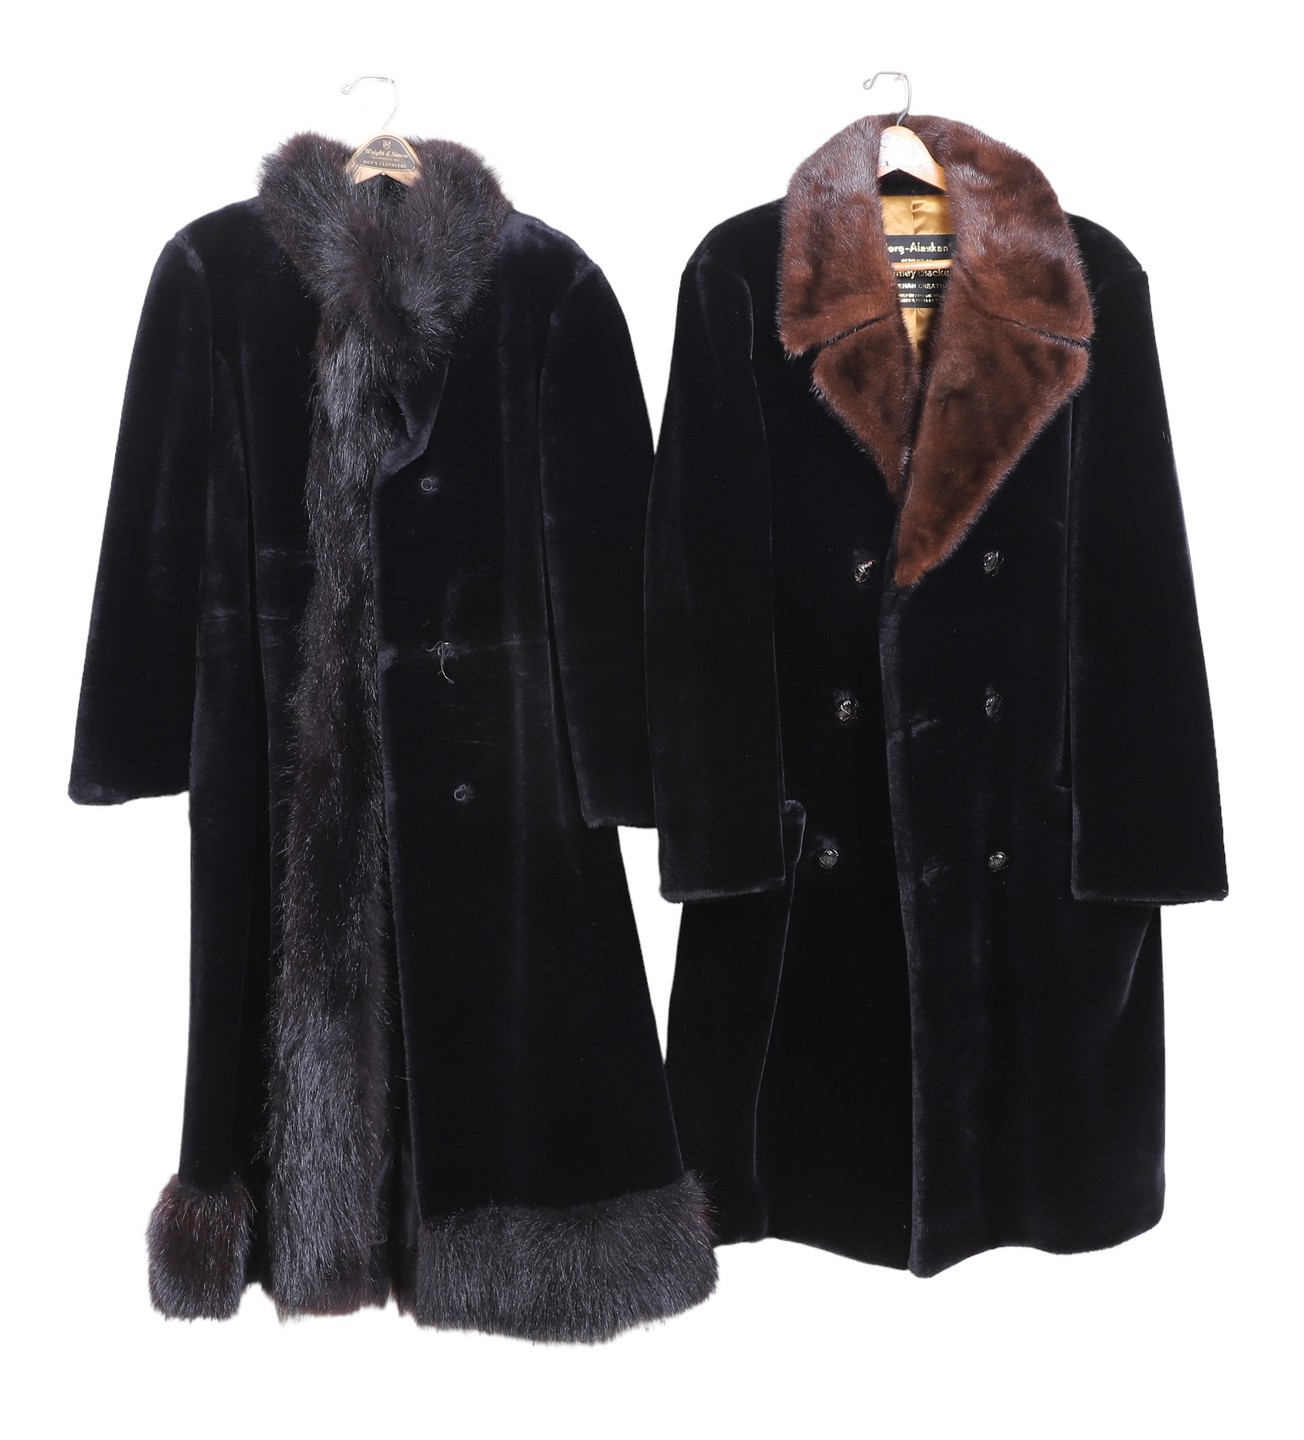  2 Vintage teddy bear coats with 317dd5